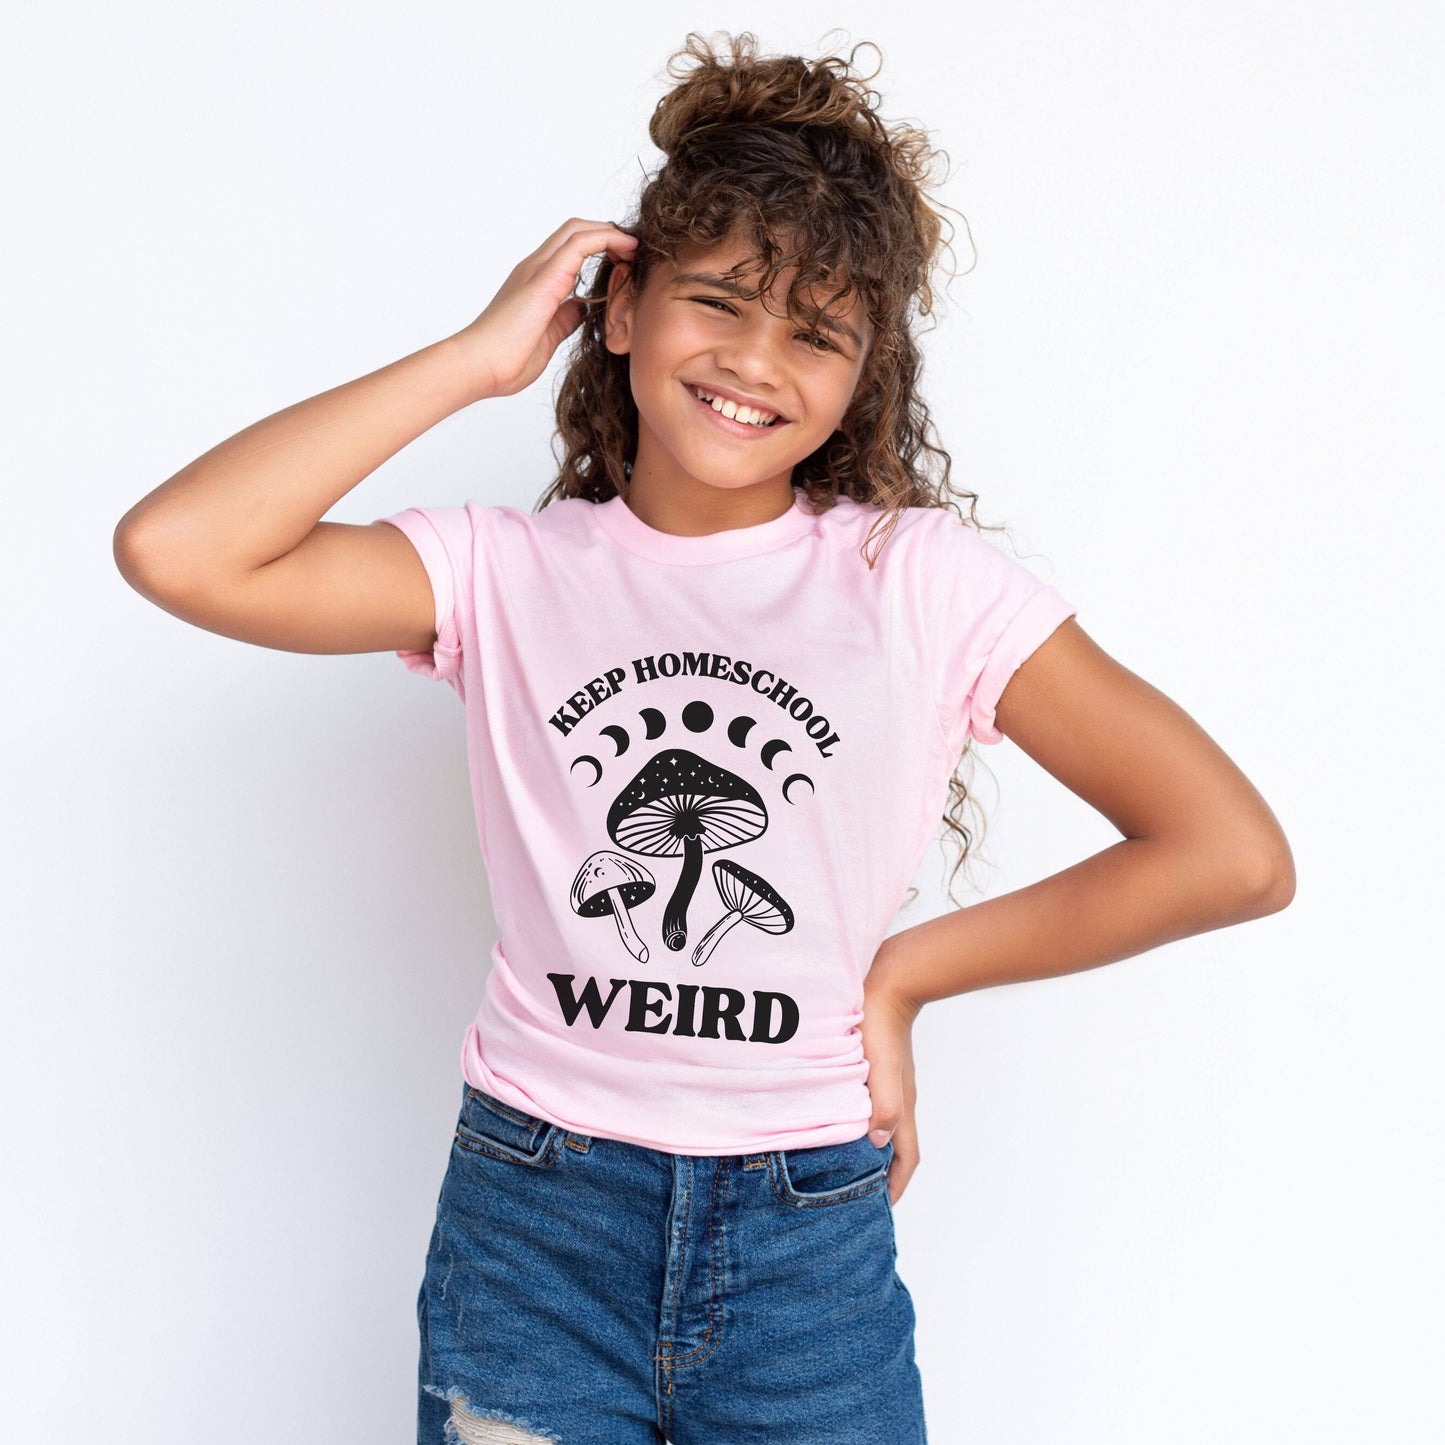 Keep Homeschool Weird Youth Kids Short Sleeve Tee Shirt